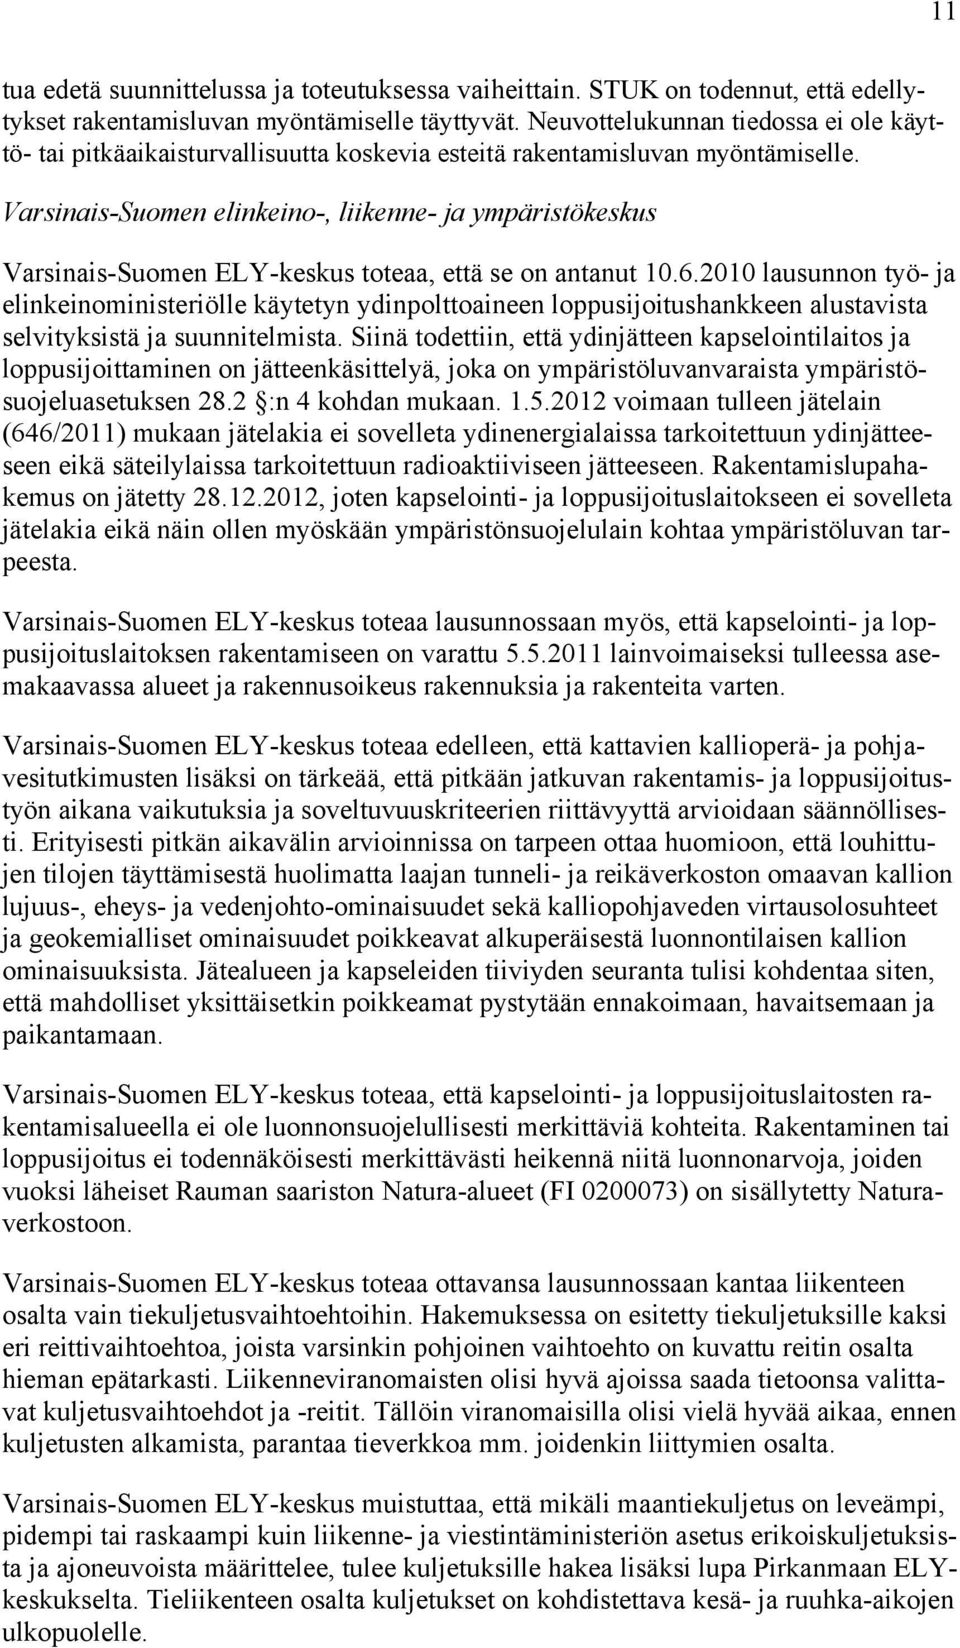 Varsinais-Suomen elinkeino-, liikenne- ja ympäristökeskus Varsinais-Suomen ELY-keskus toteaa, että se on antanut 10.6.